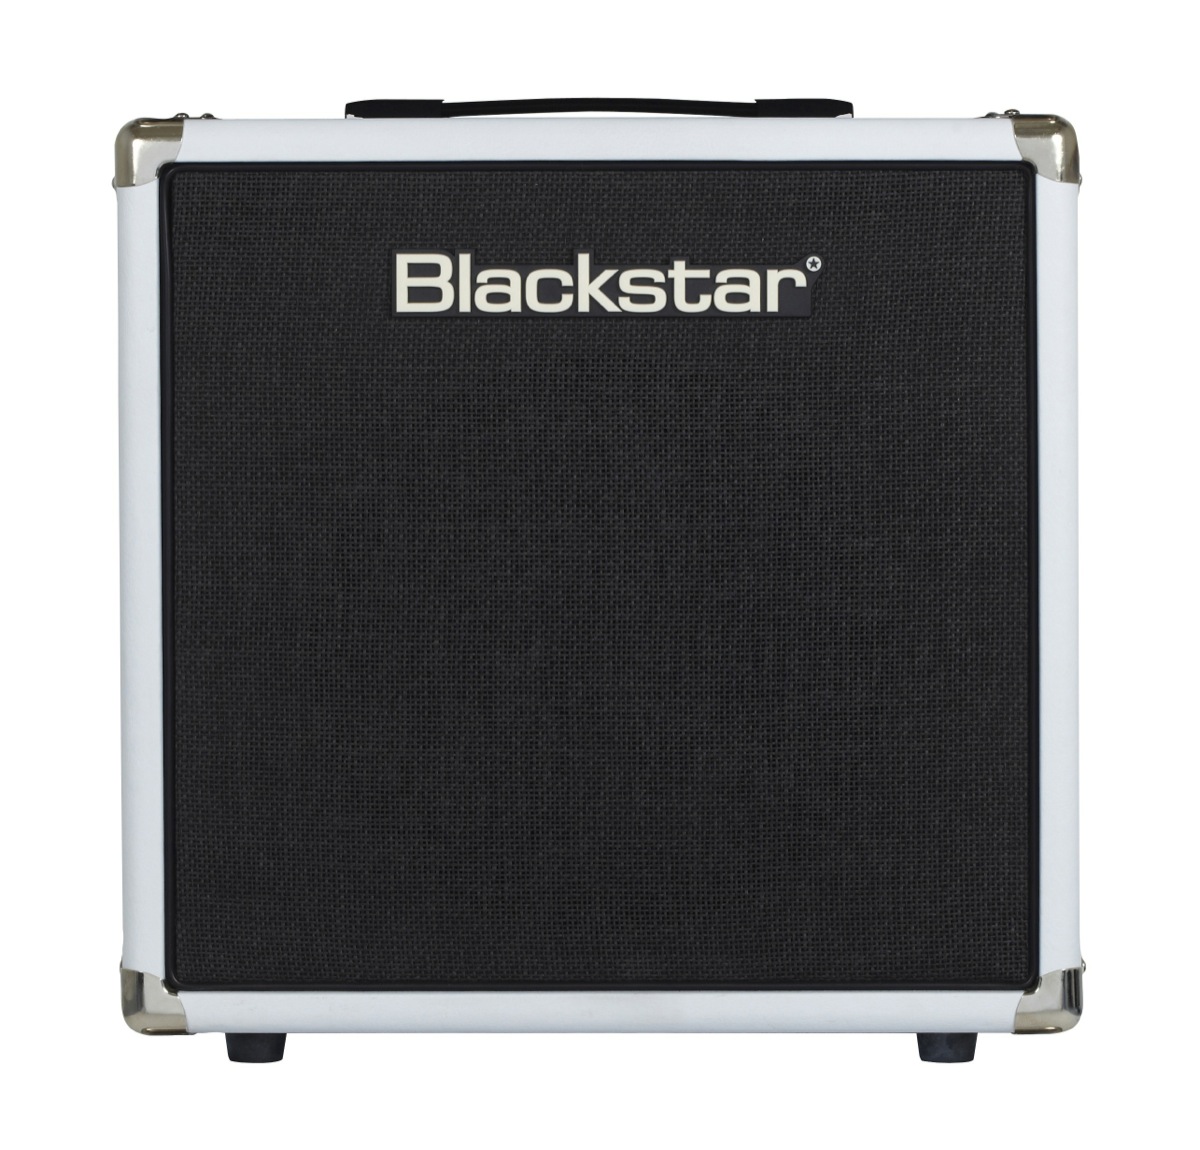 Blackstar Amplification Blackstar HT-112 Guitar Speaker Cabinet (50 Watts, 1x12